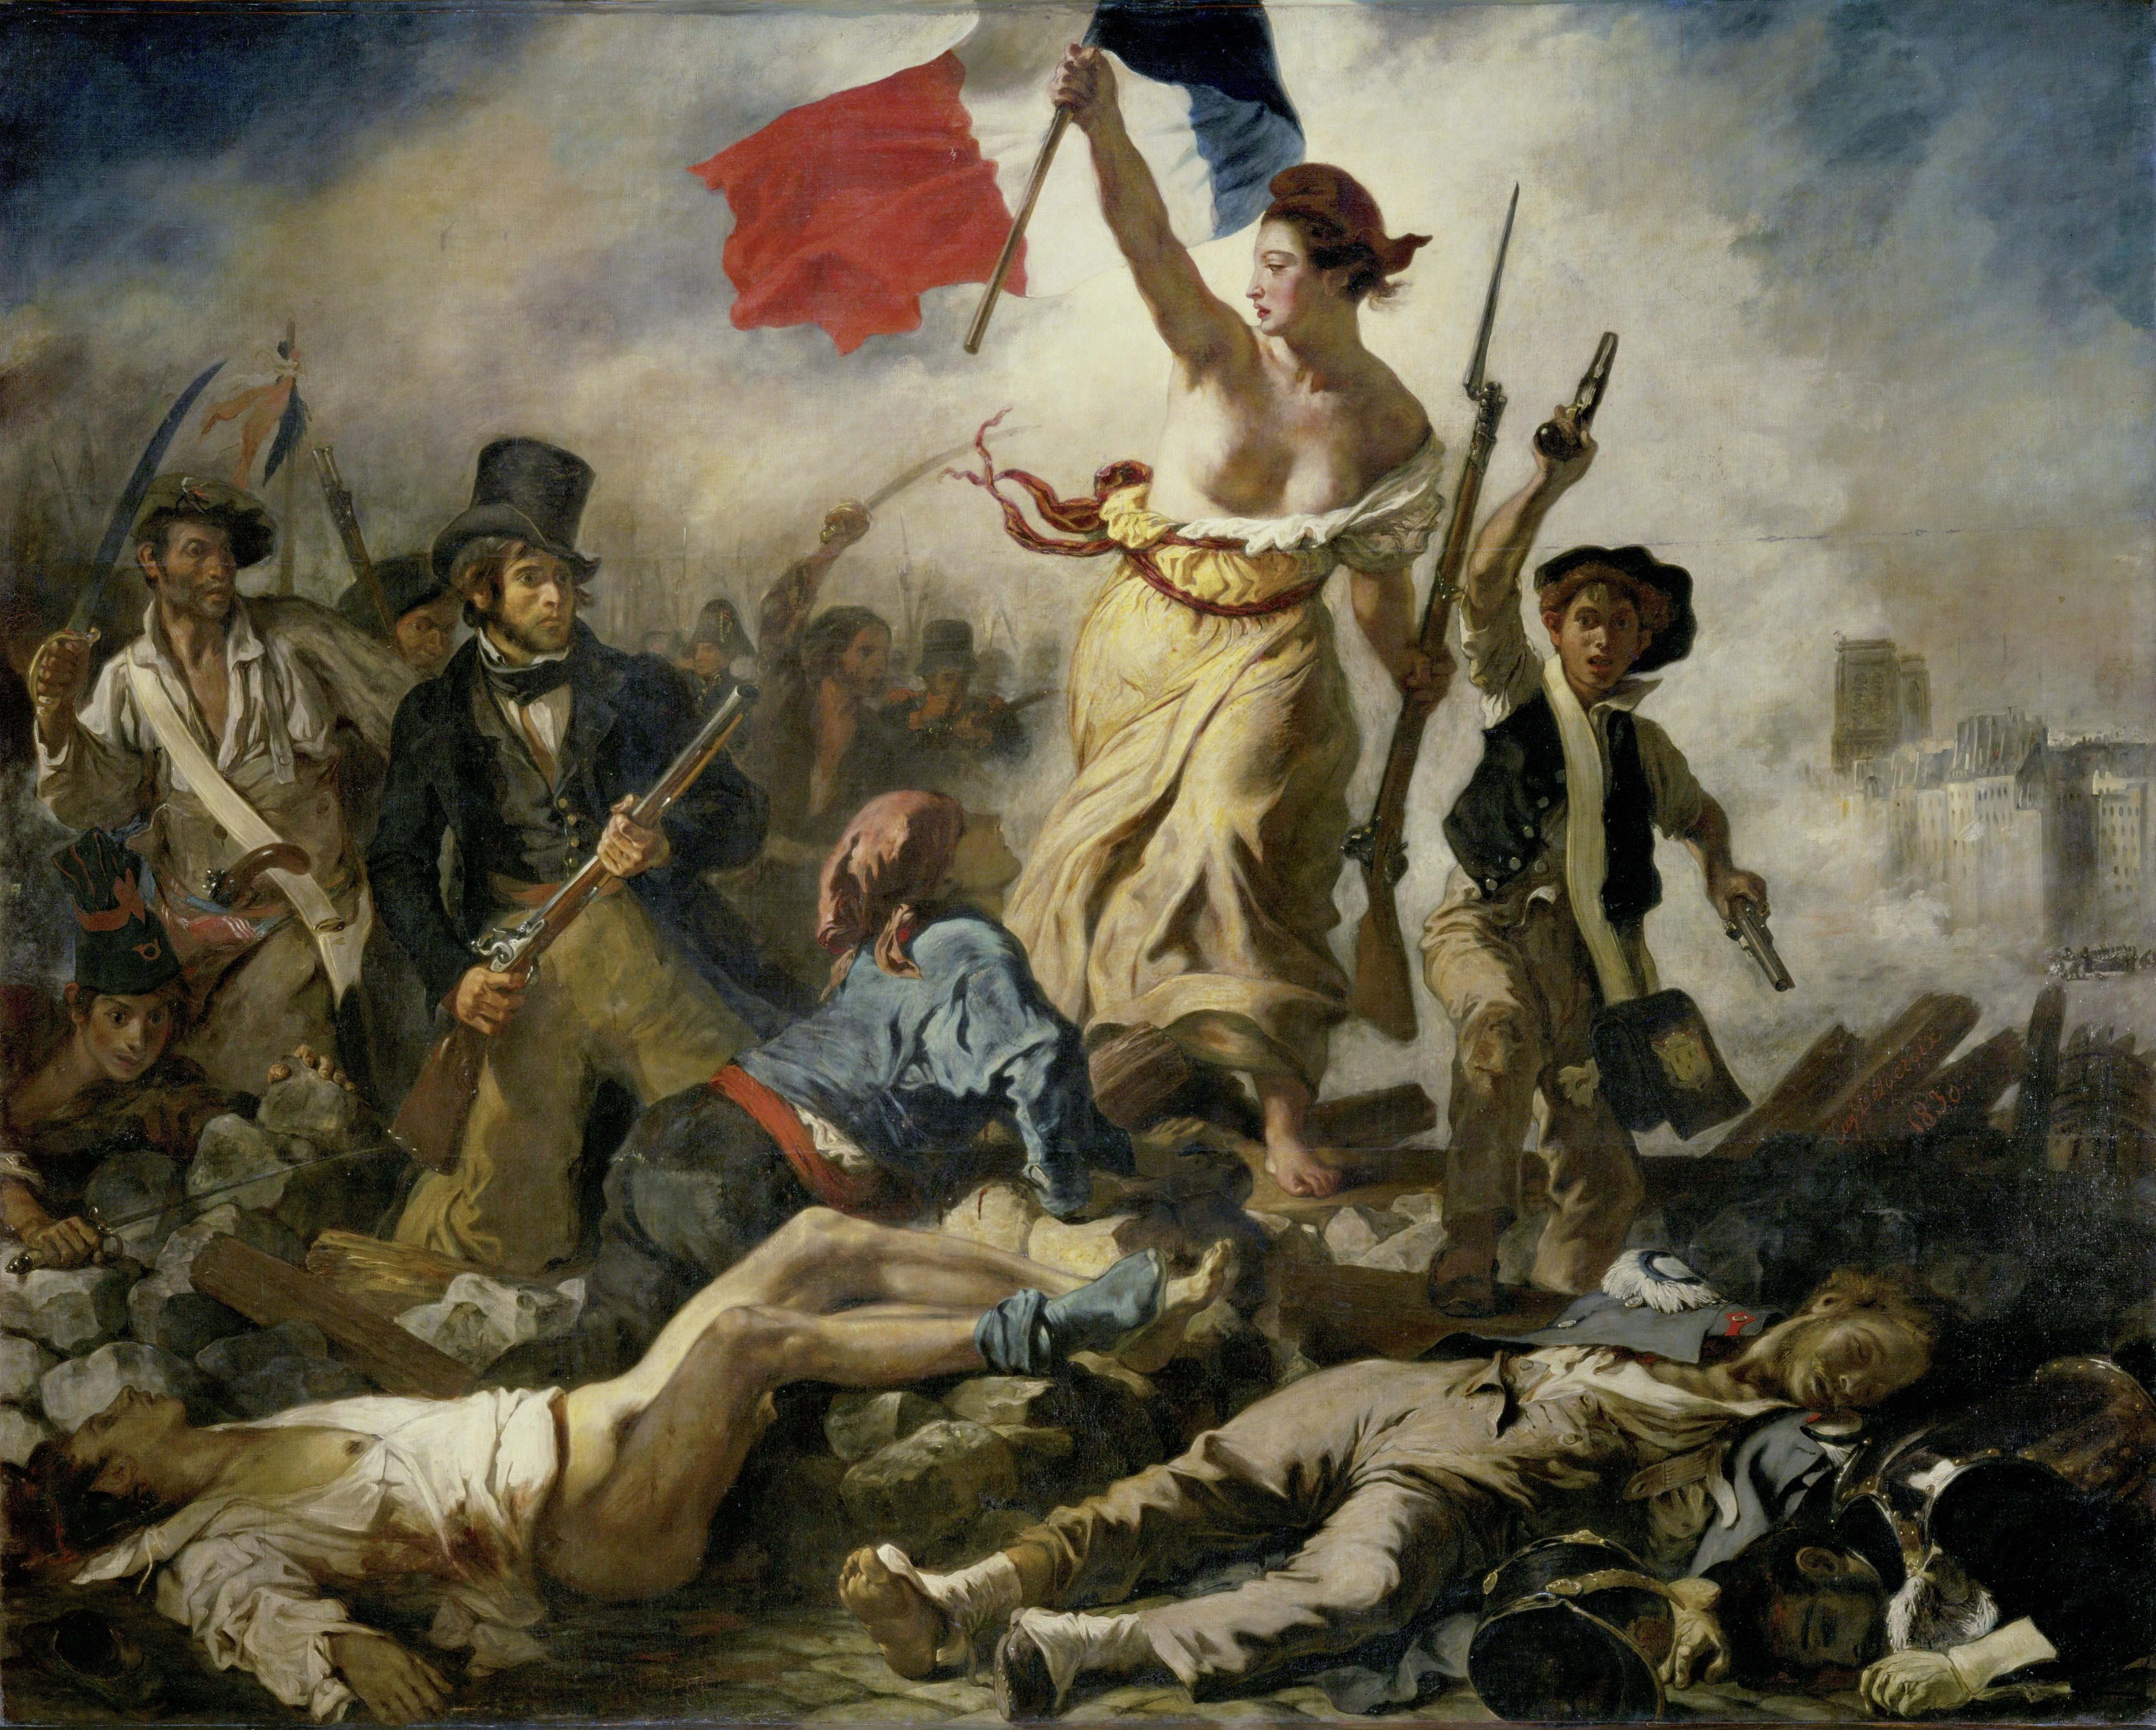 63ad574928696_Eugène_Delacroix_-_Le_28_Juillet._La_Liberté_guidant_le_peuple.jpg